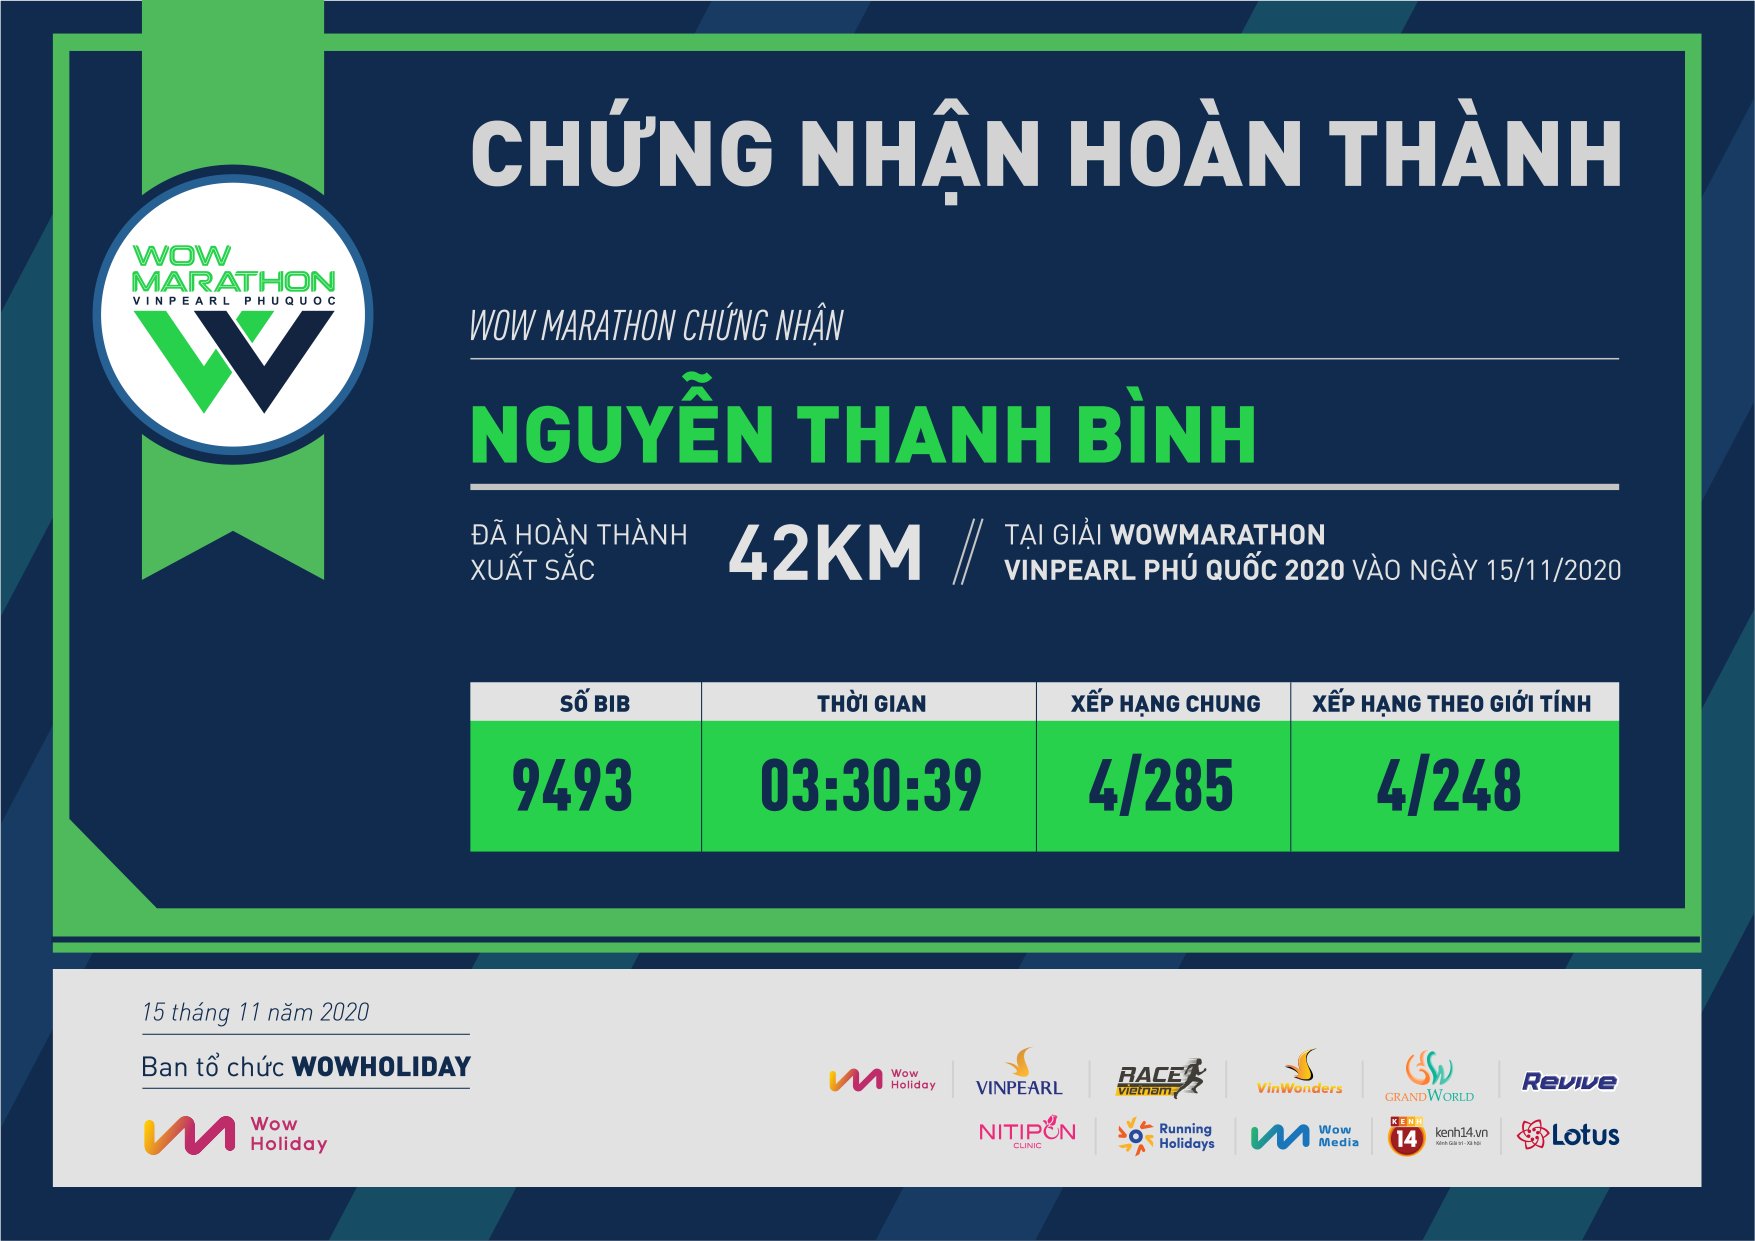 9493 - Nguyễn Thanh Bình